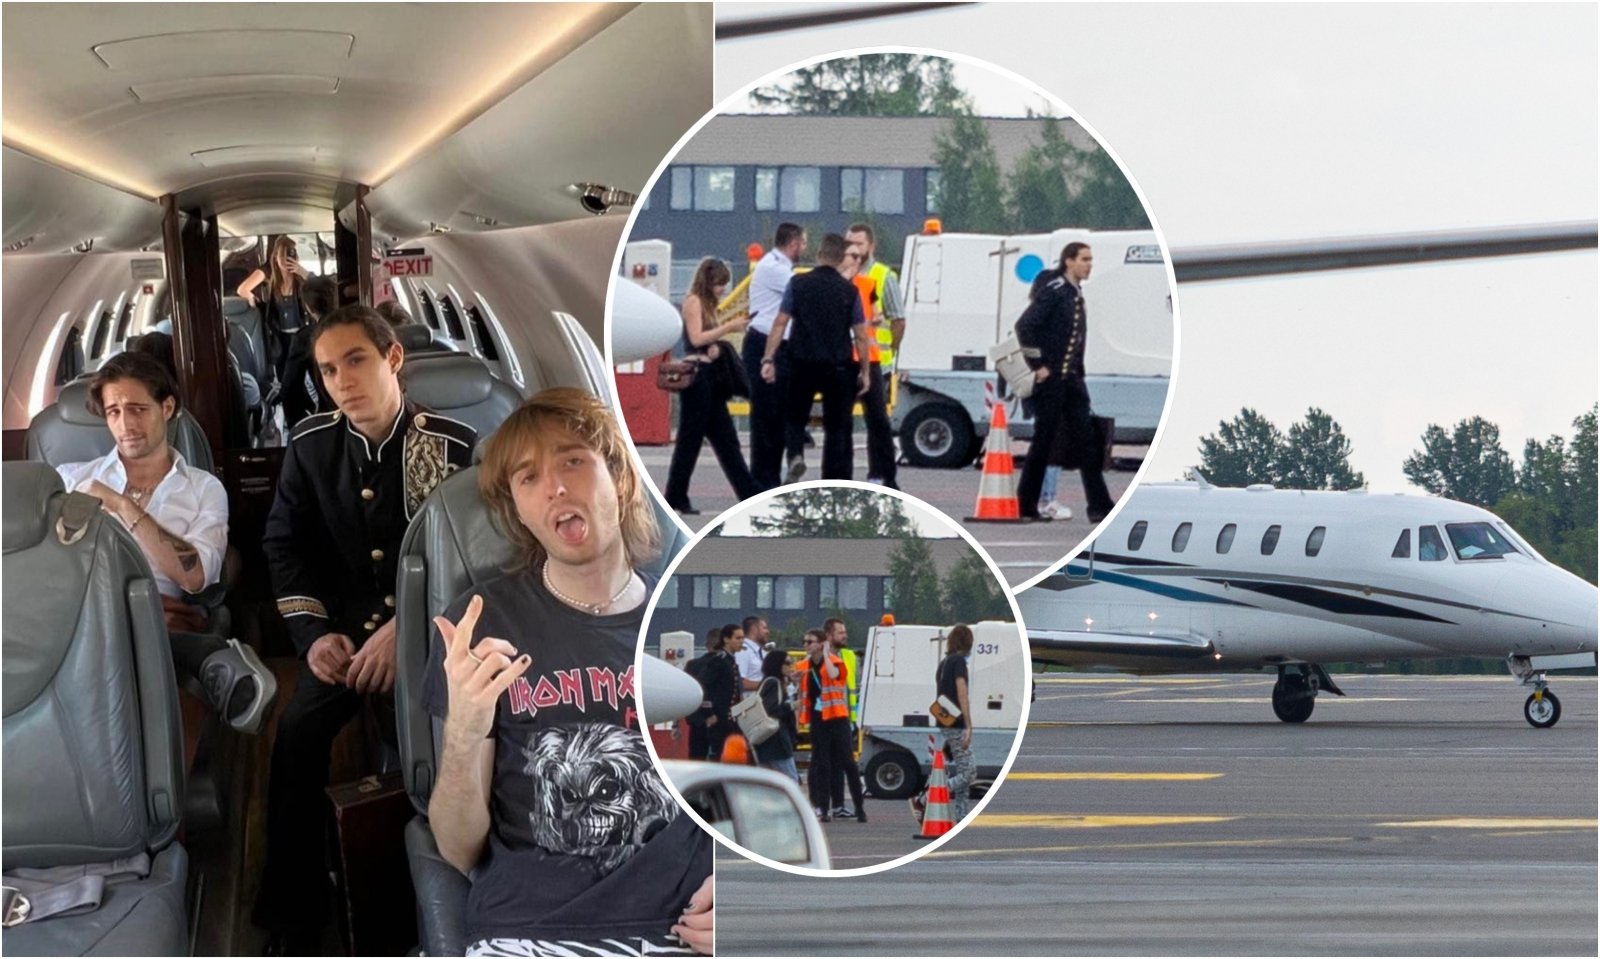 Le superstar di “Måneskin” beccate in Lituania: sono atterrate nell’area Vip su un aereo privato, ad attenderle un pugno di fan